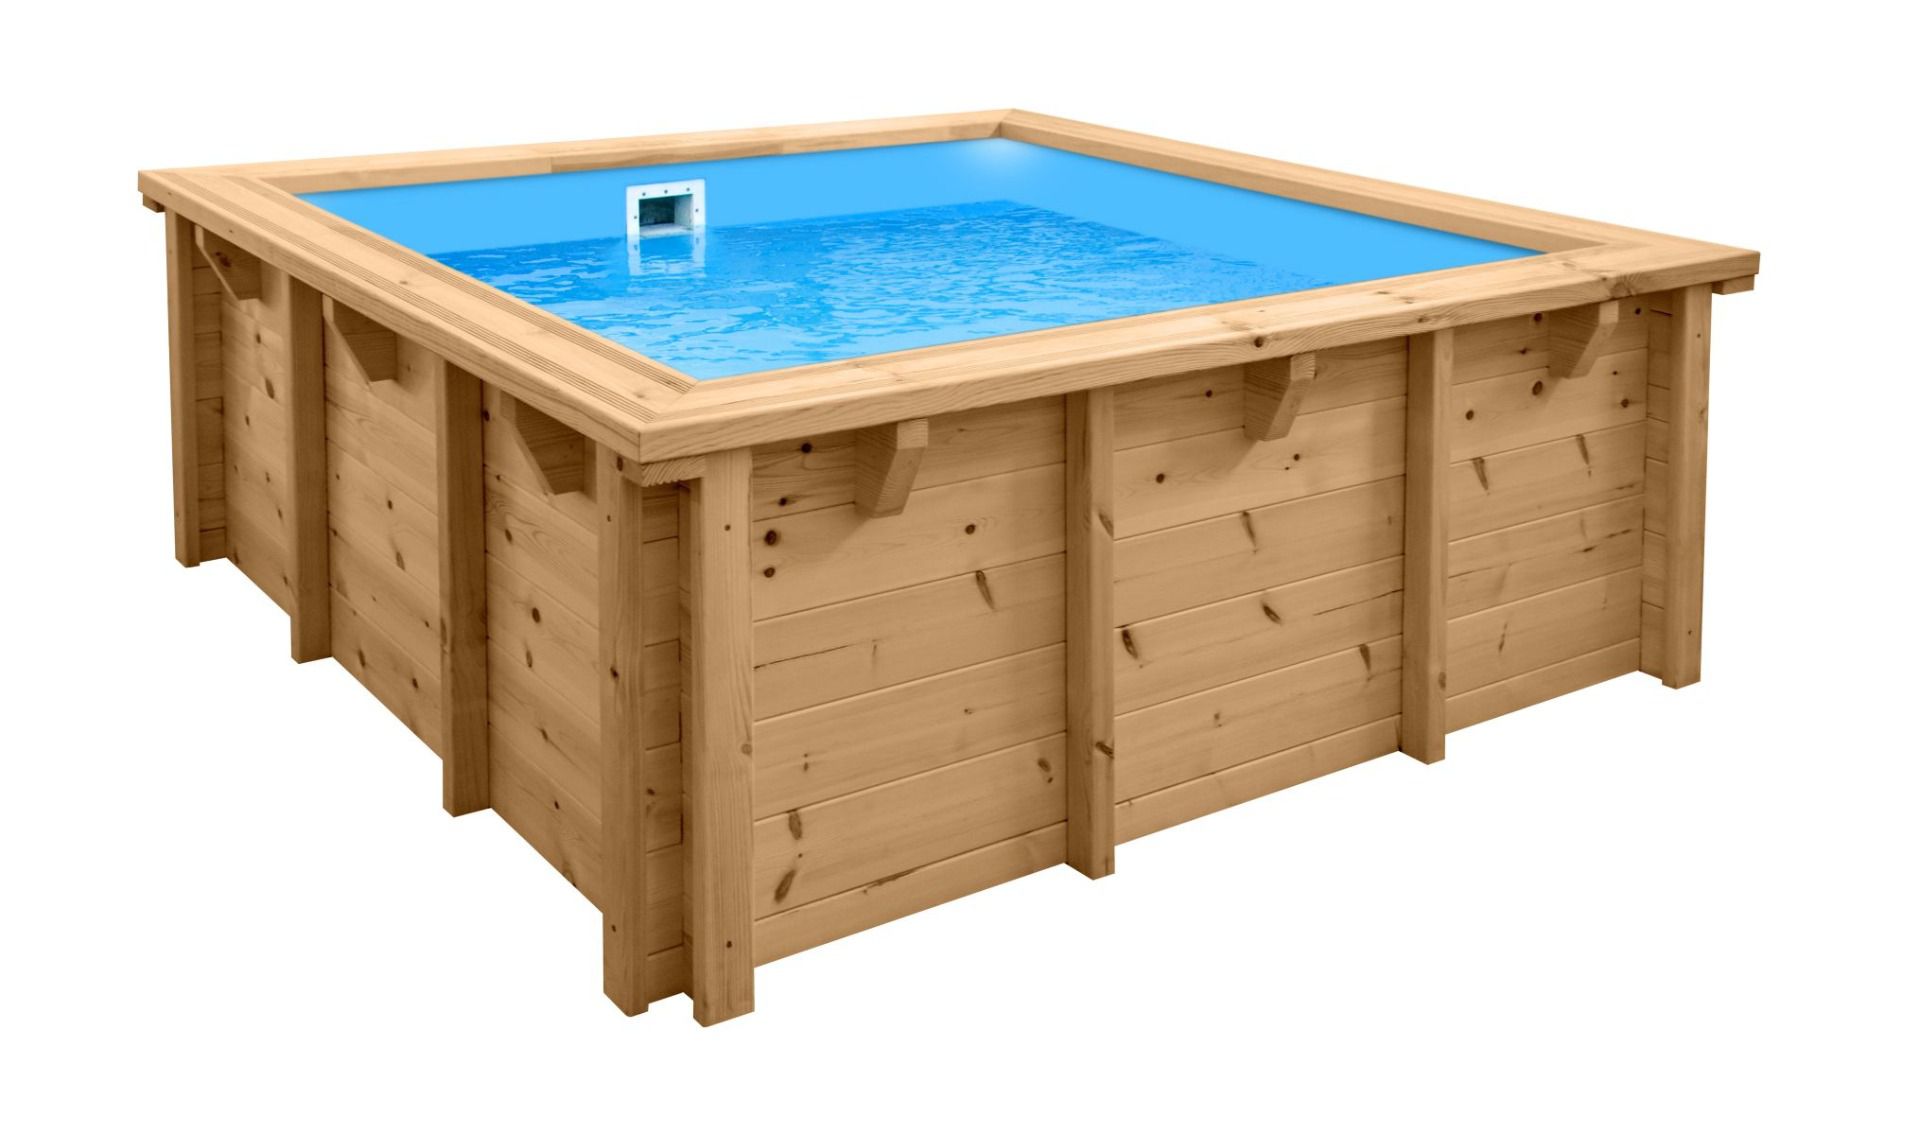 Modern Sunnydream 01 houten zwembad, 2,10 x 2,10 meter, inclusief premium filtersysteem, filtermedium, zwembadfolie, vloer- en muurvlies, roestvrijstalen hoekverbindingen